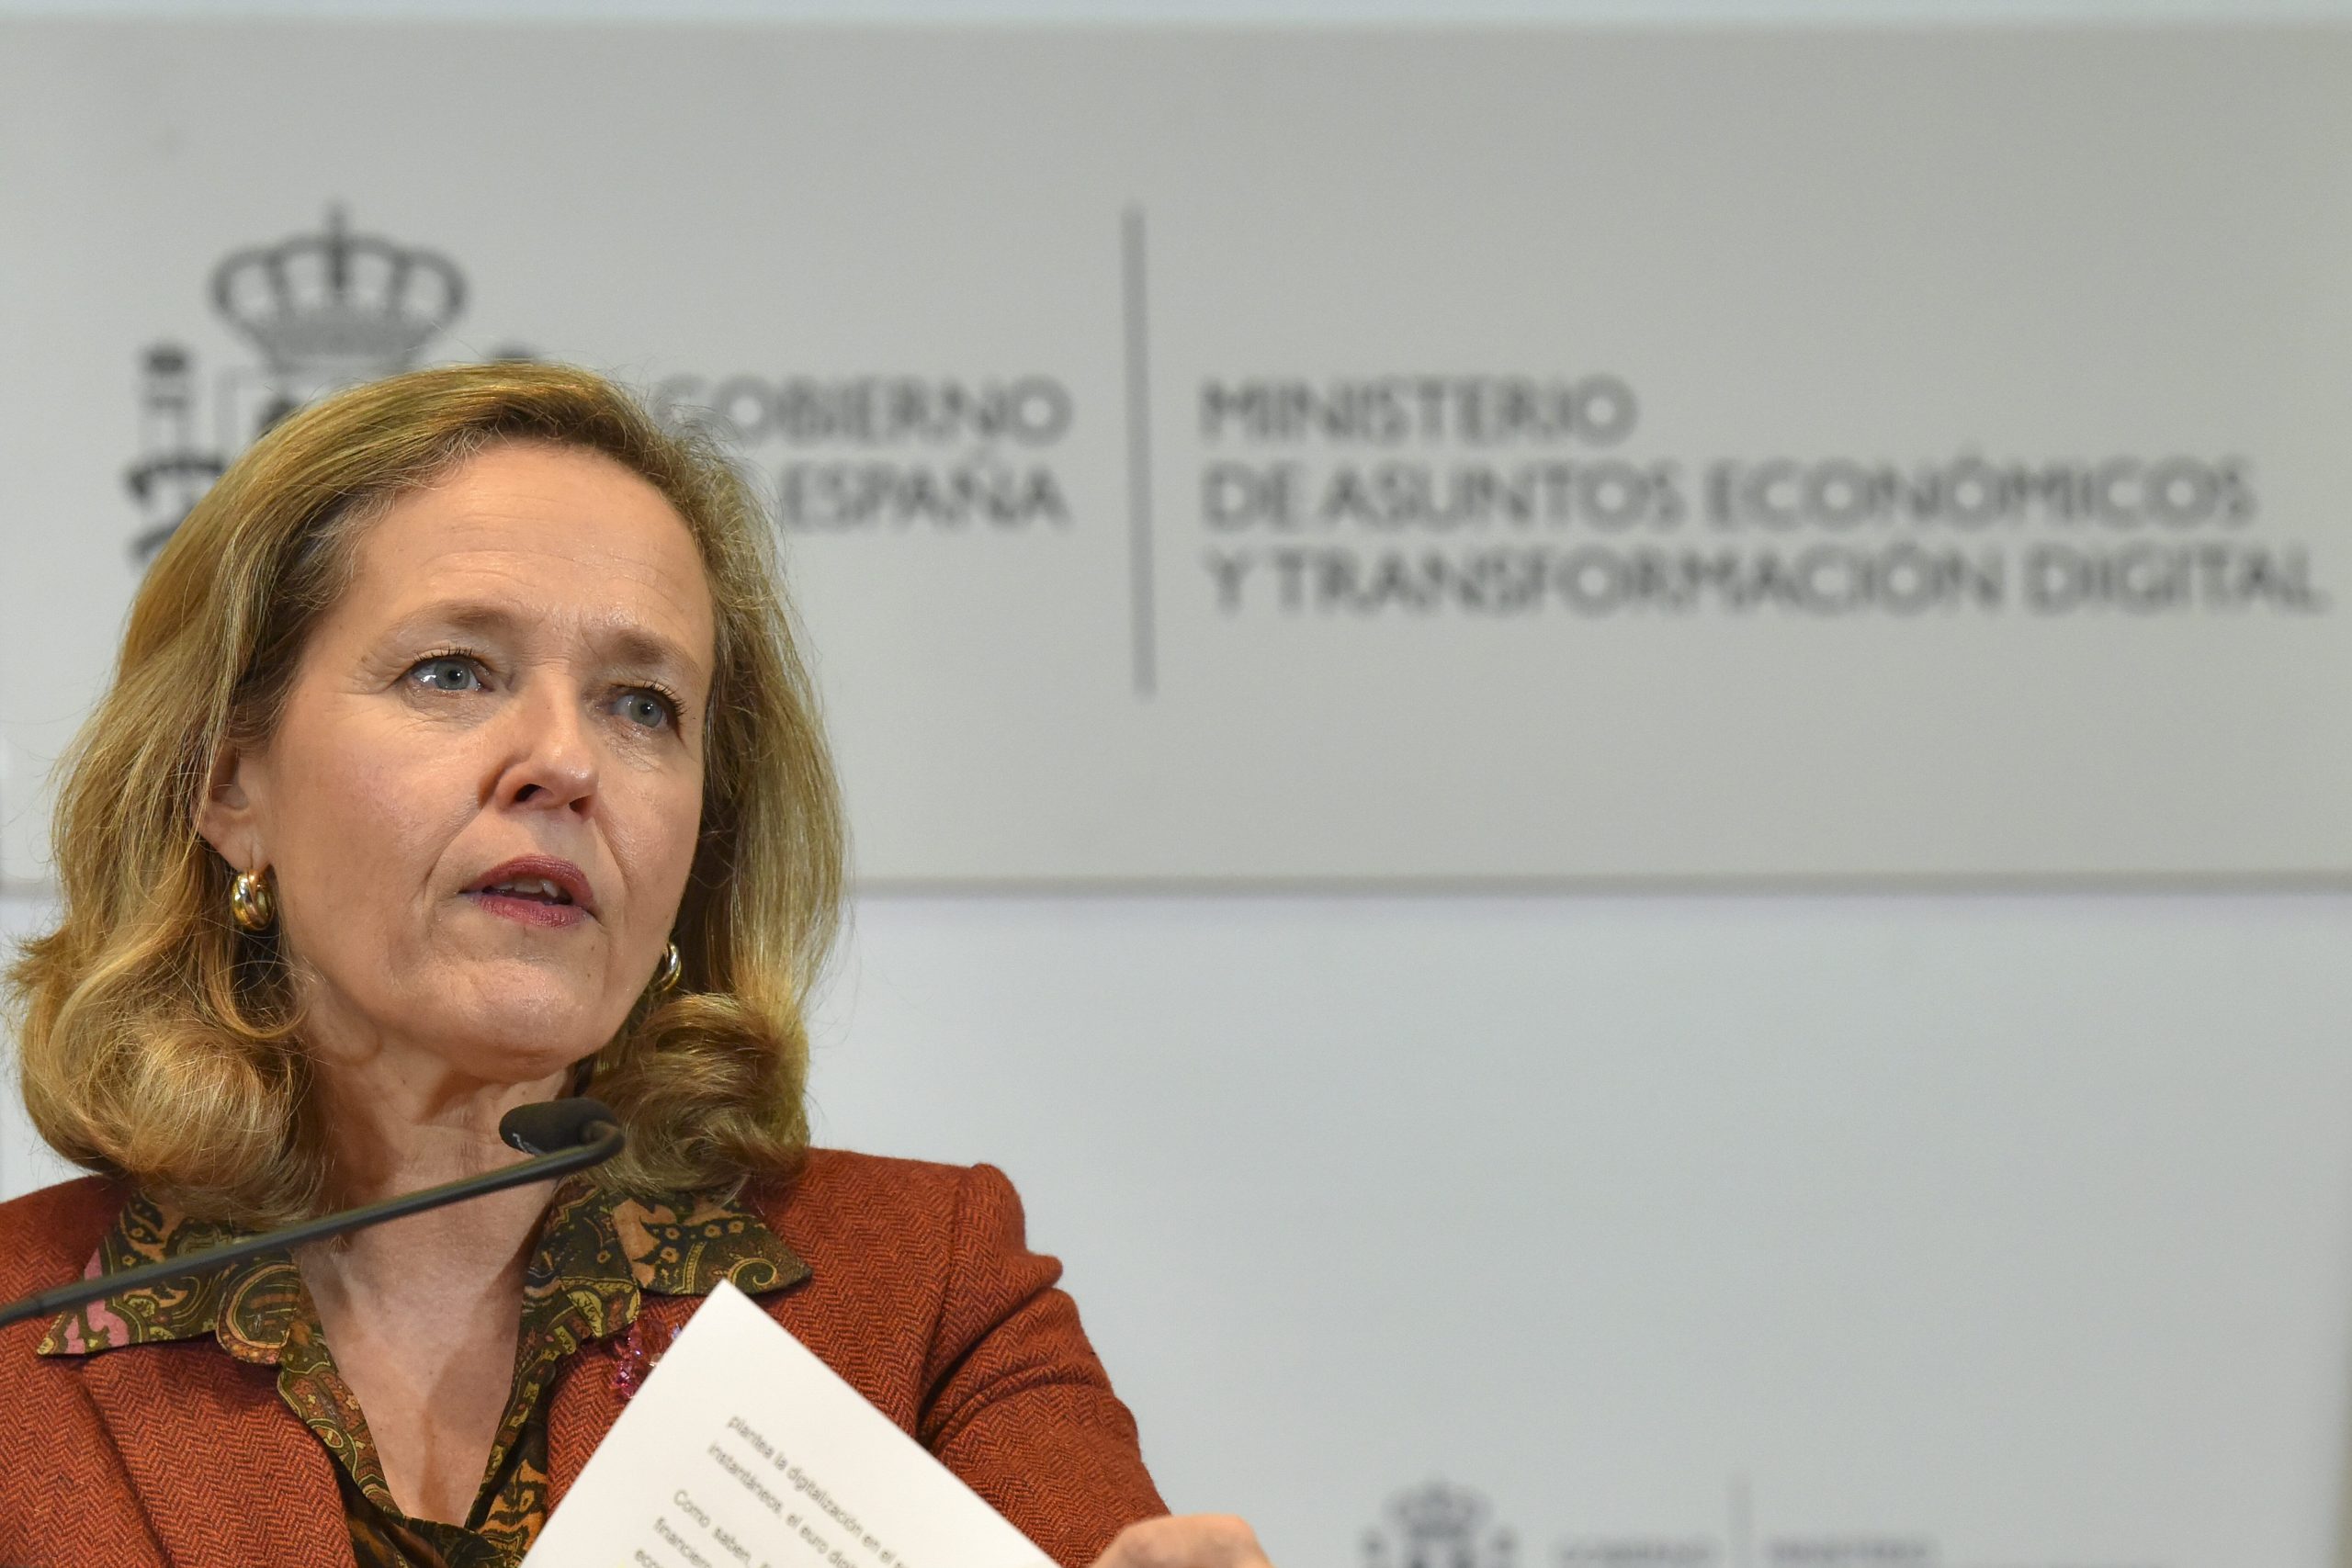 Economy Minister Nadia Calviño